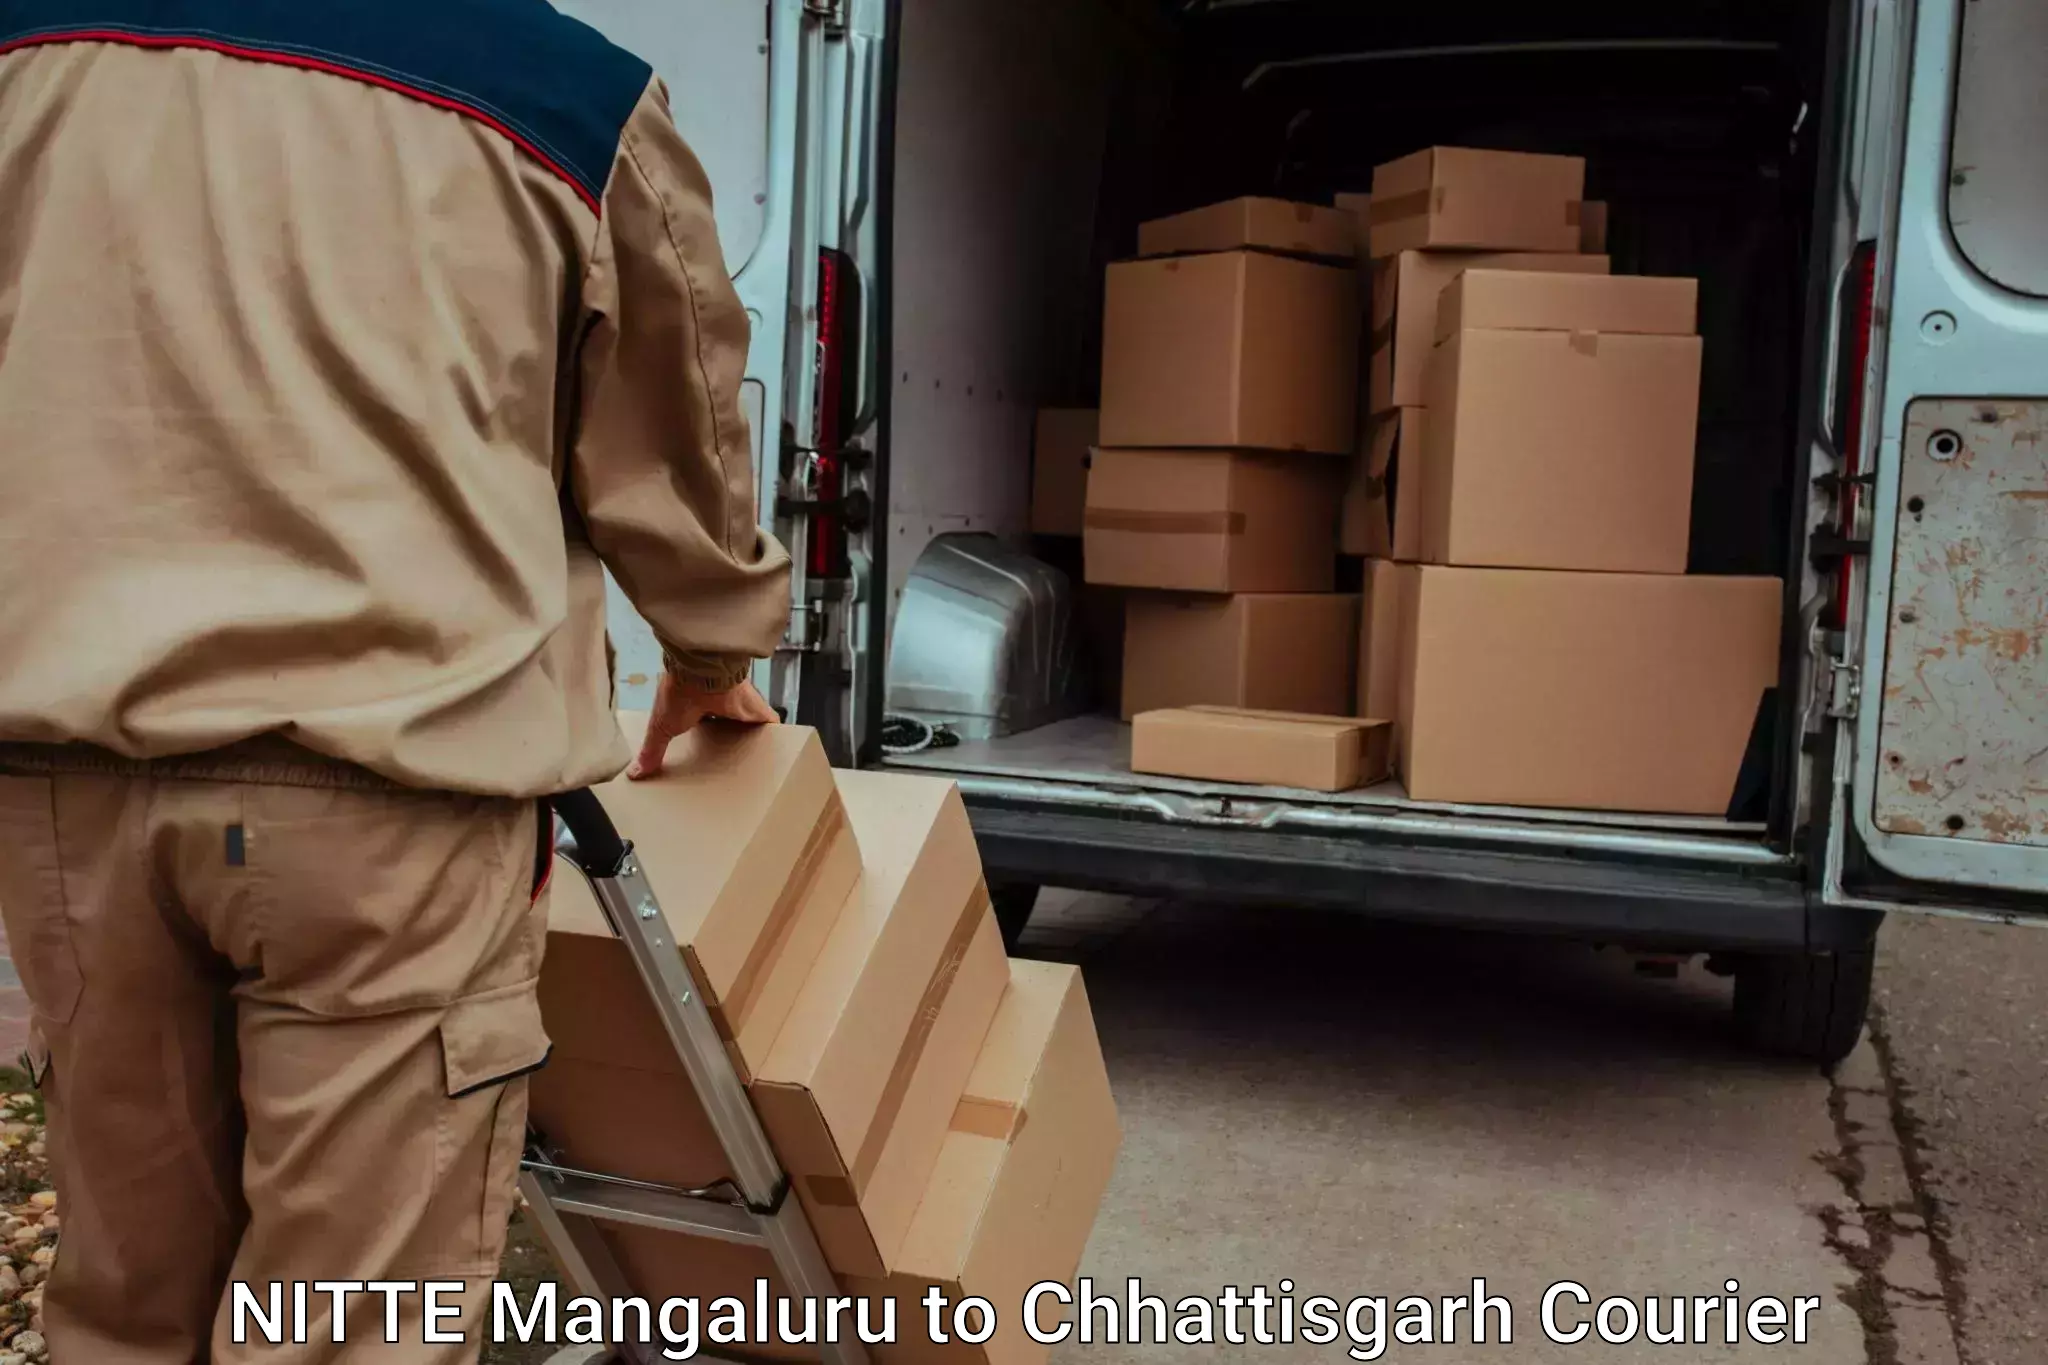 Luggage transport operations NITTE Mangaluru to Patna Chhattisgarh